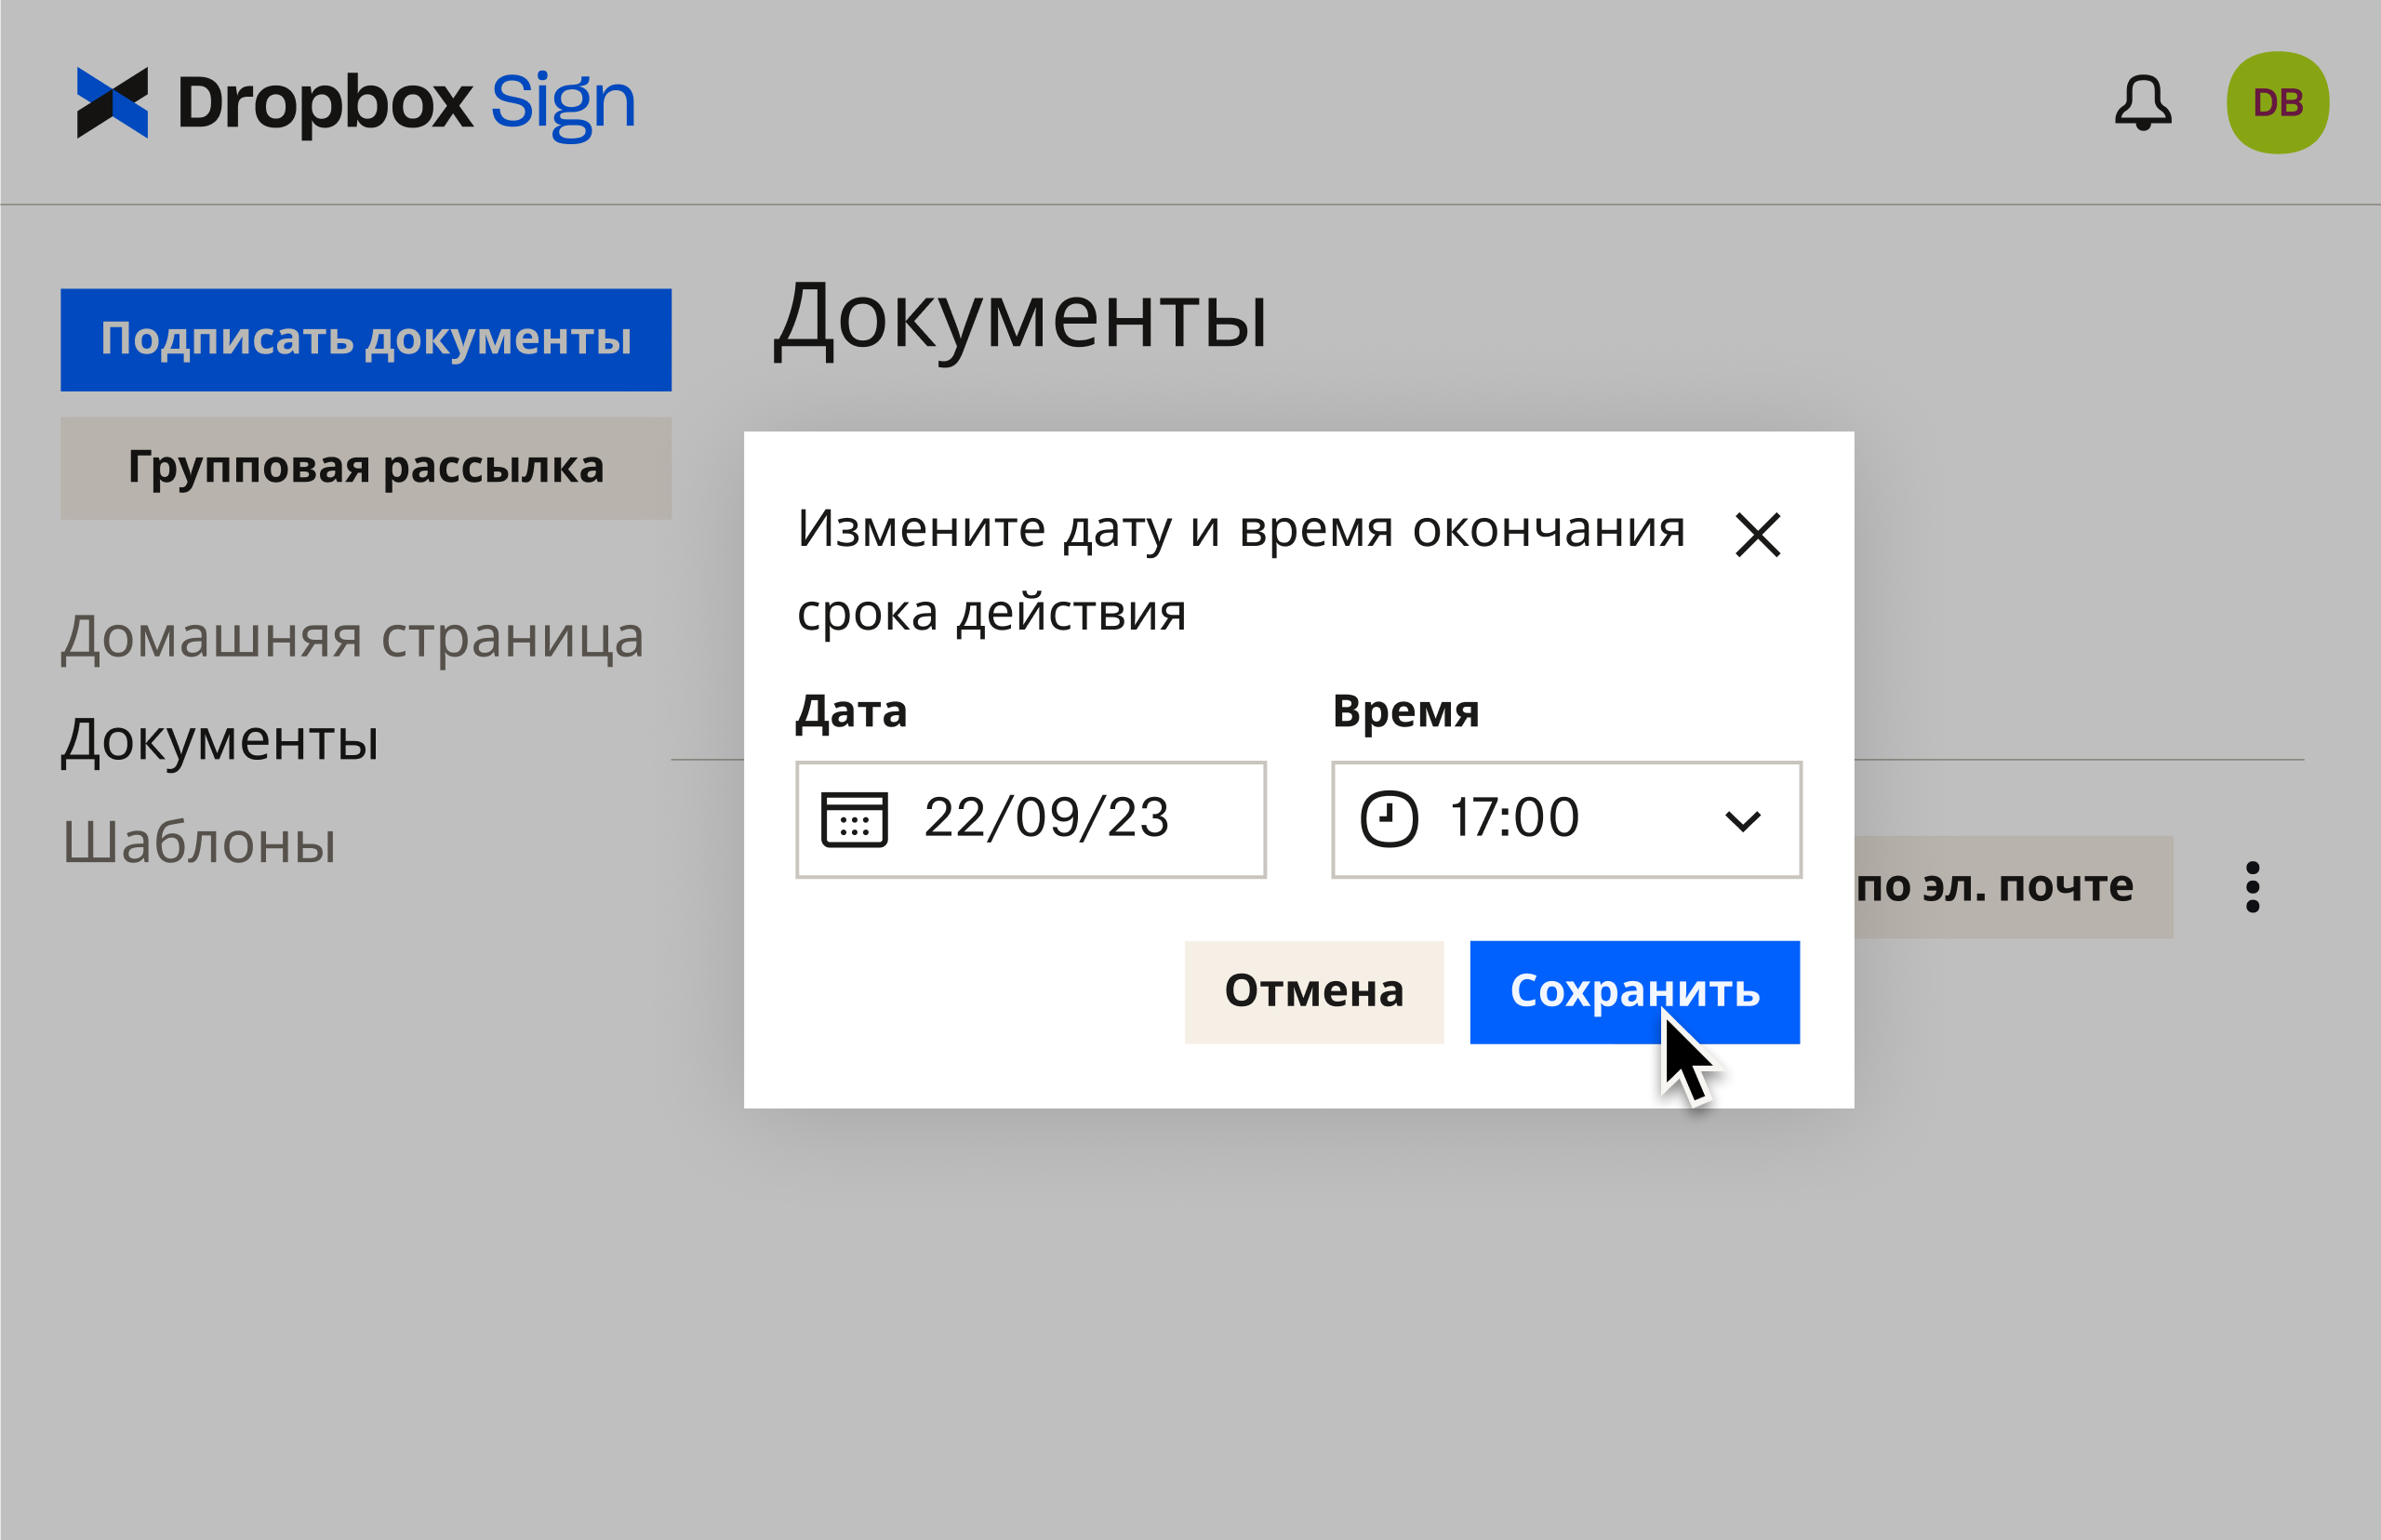 Пользовательский интерфейс Dropbox Sign, в котором показано, как редактировать сроки действия после отправки документа на подписание.